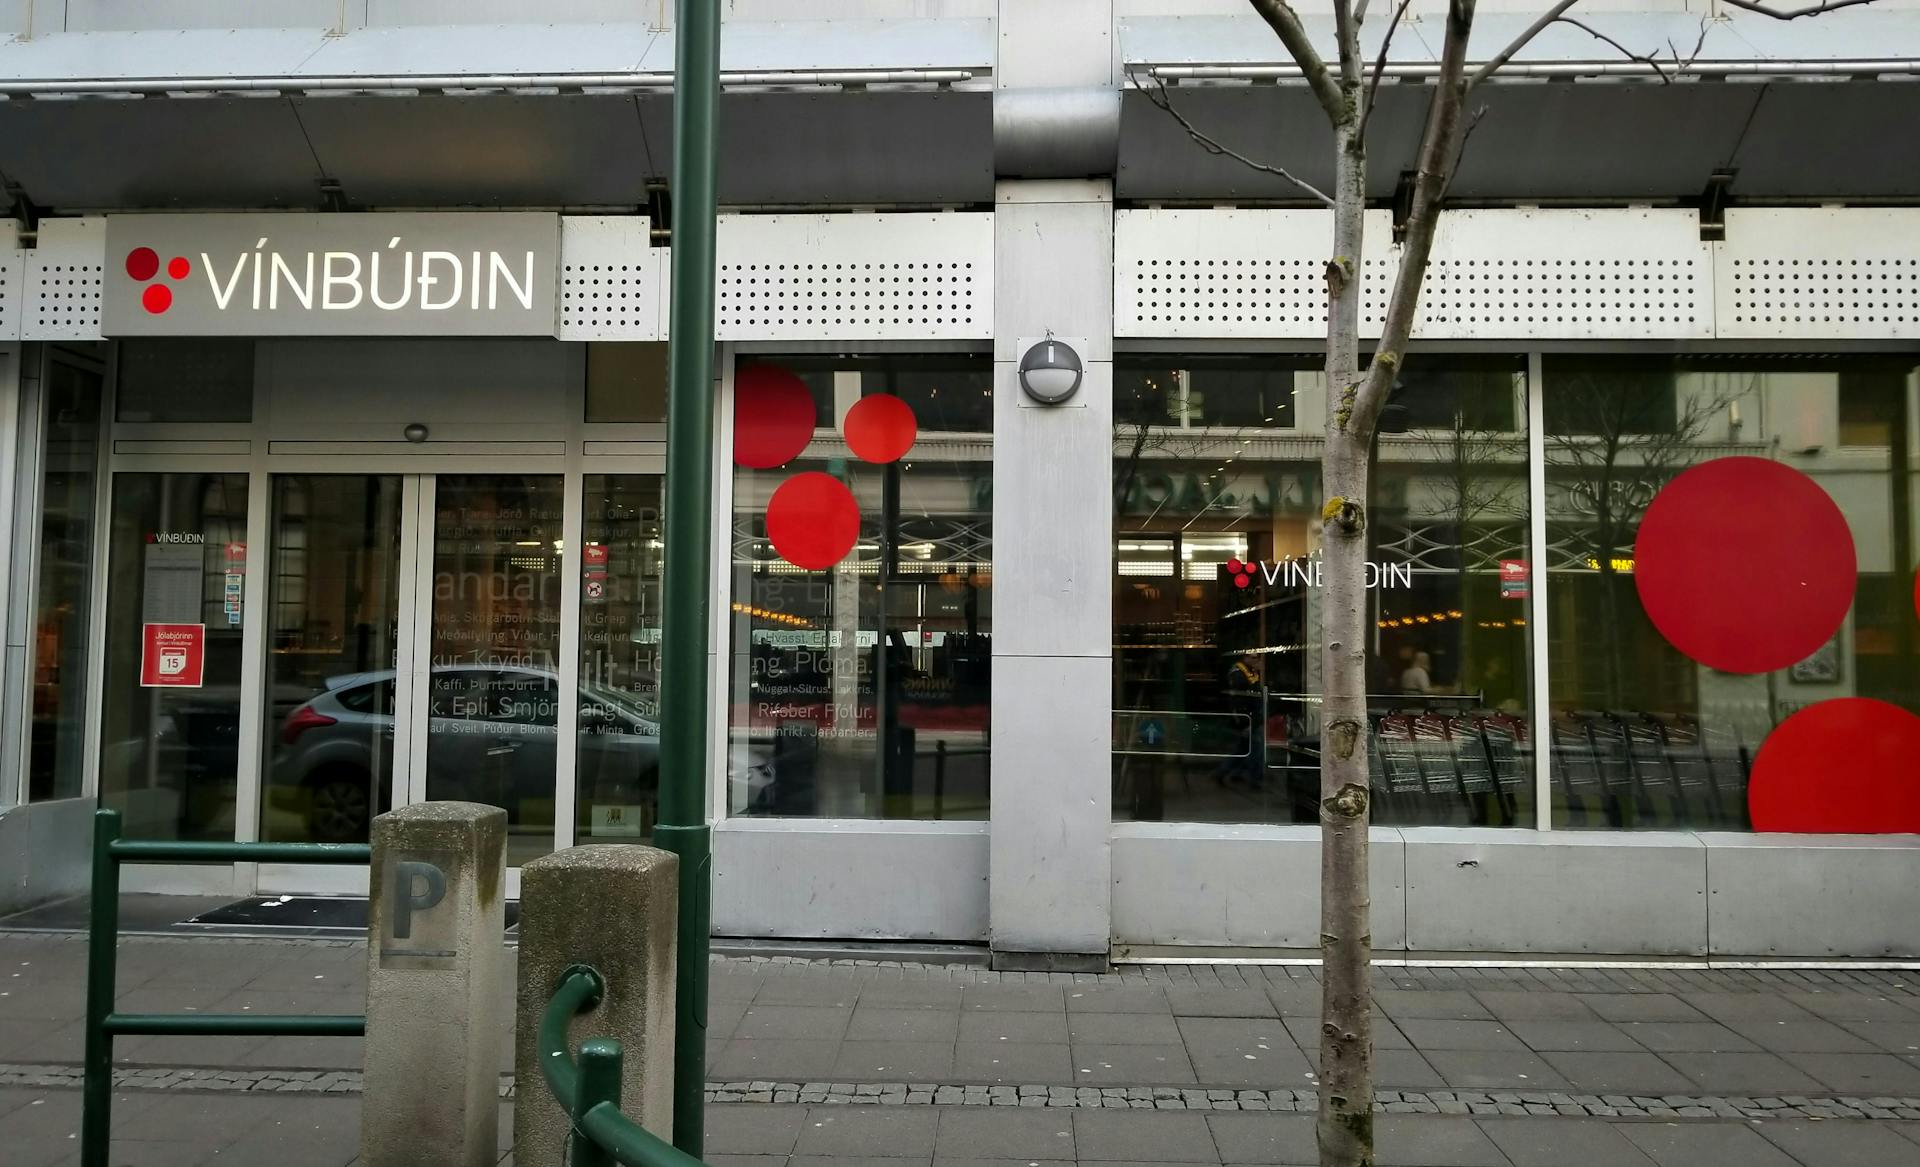 Vínbúð storefront